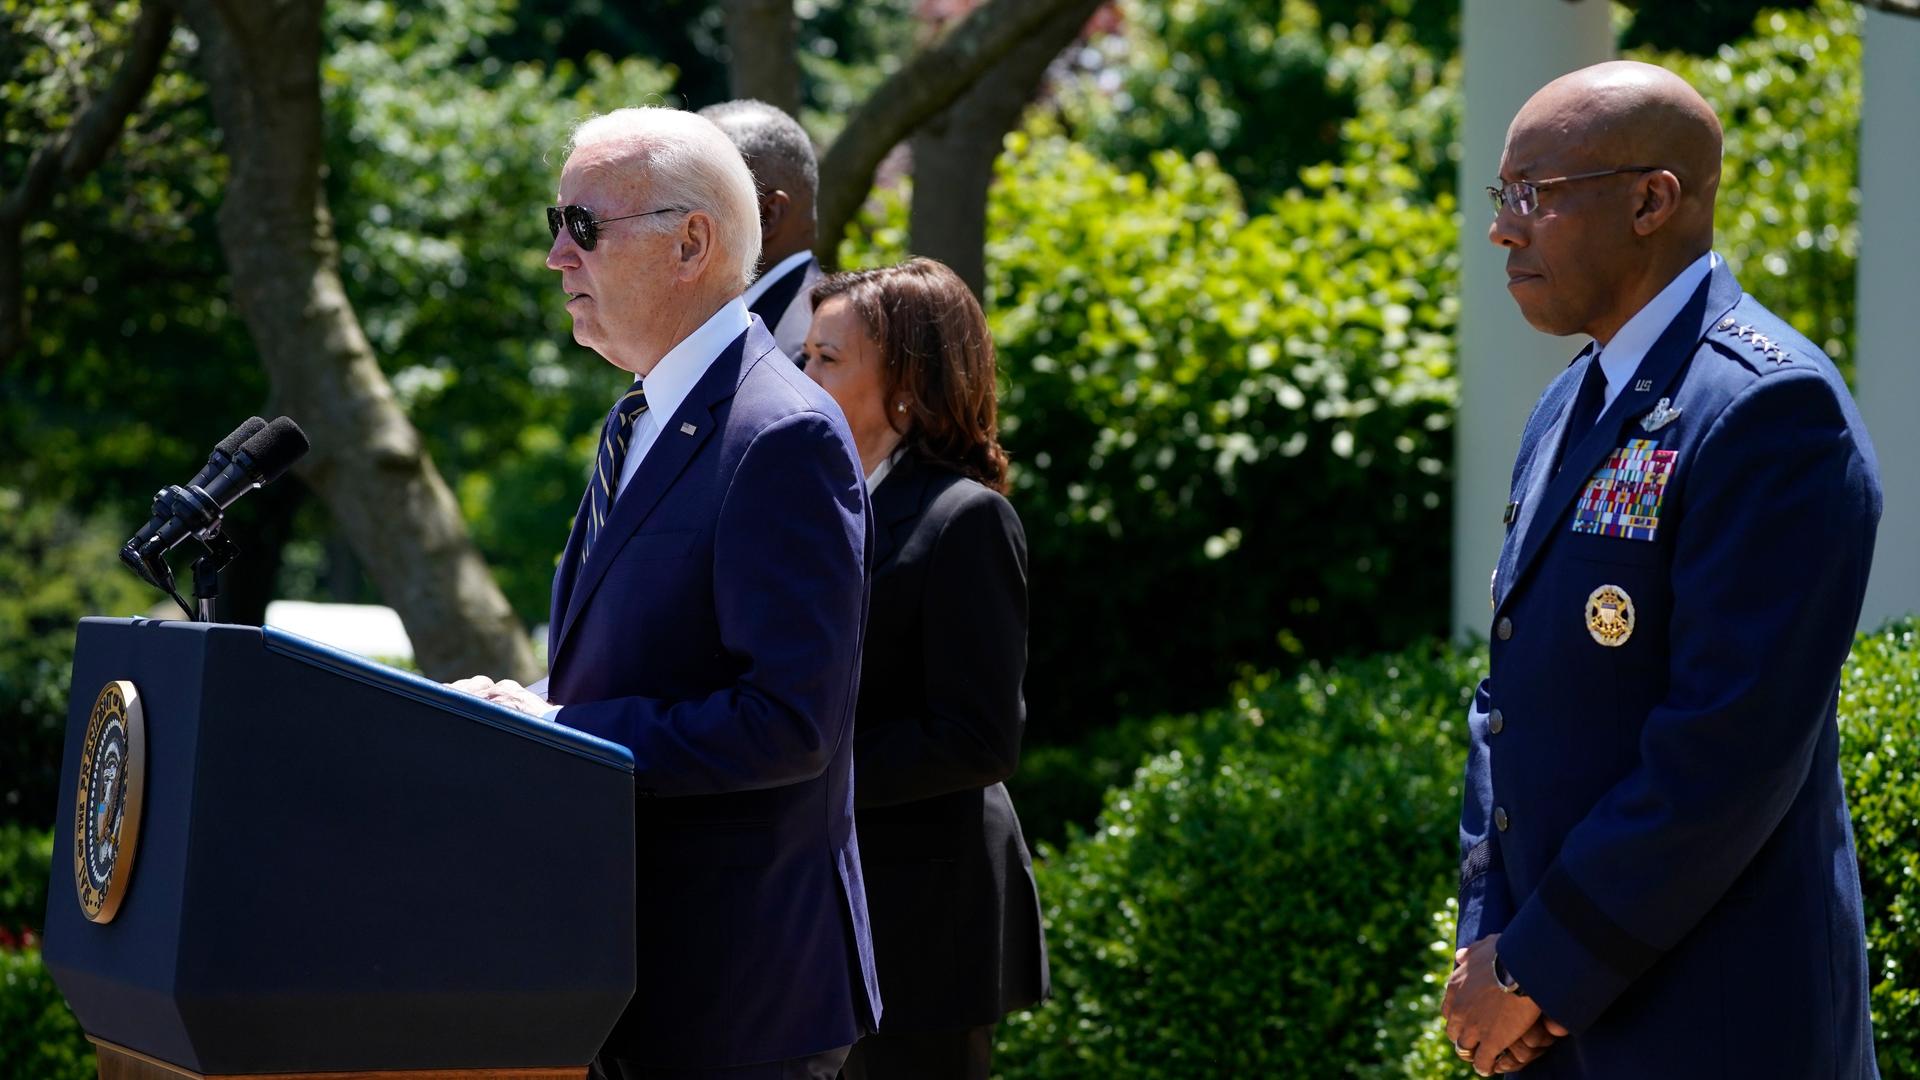 Joe Biden steht an einem Redepult im Freien, rechts versetzt hinter ihm steht Charles Brown. Im Hintergrund ist grüne Flora zu erkennen.